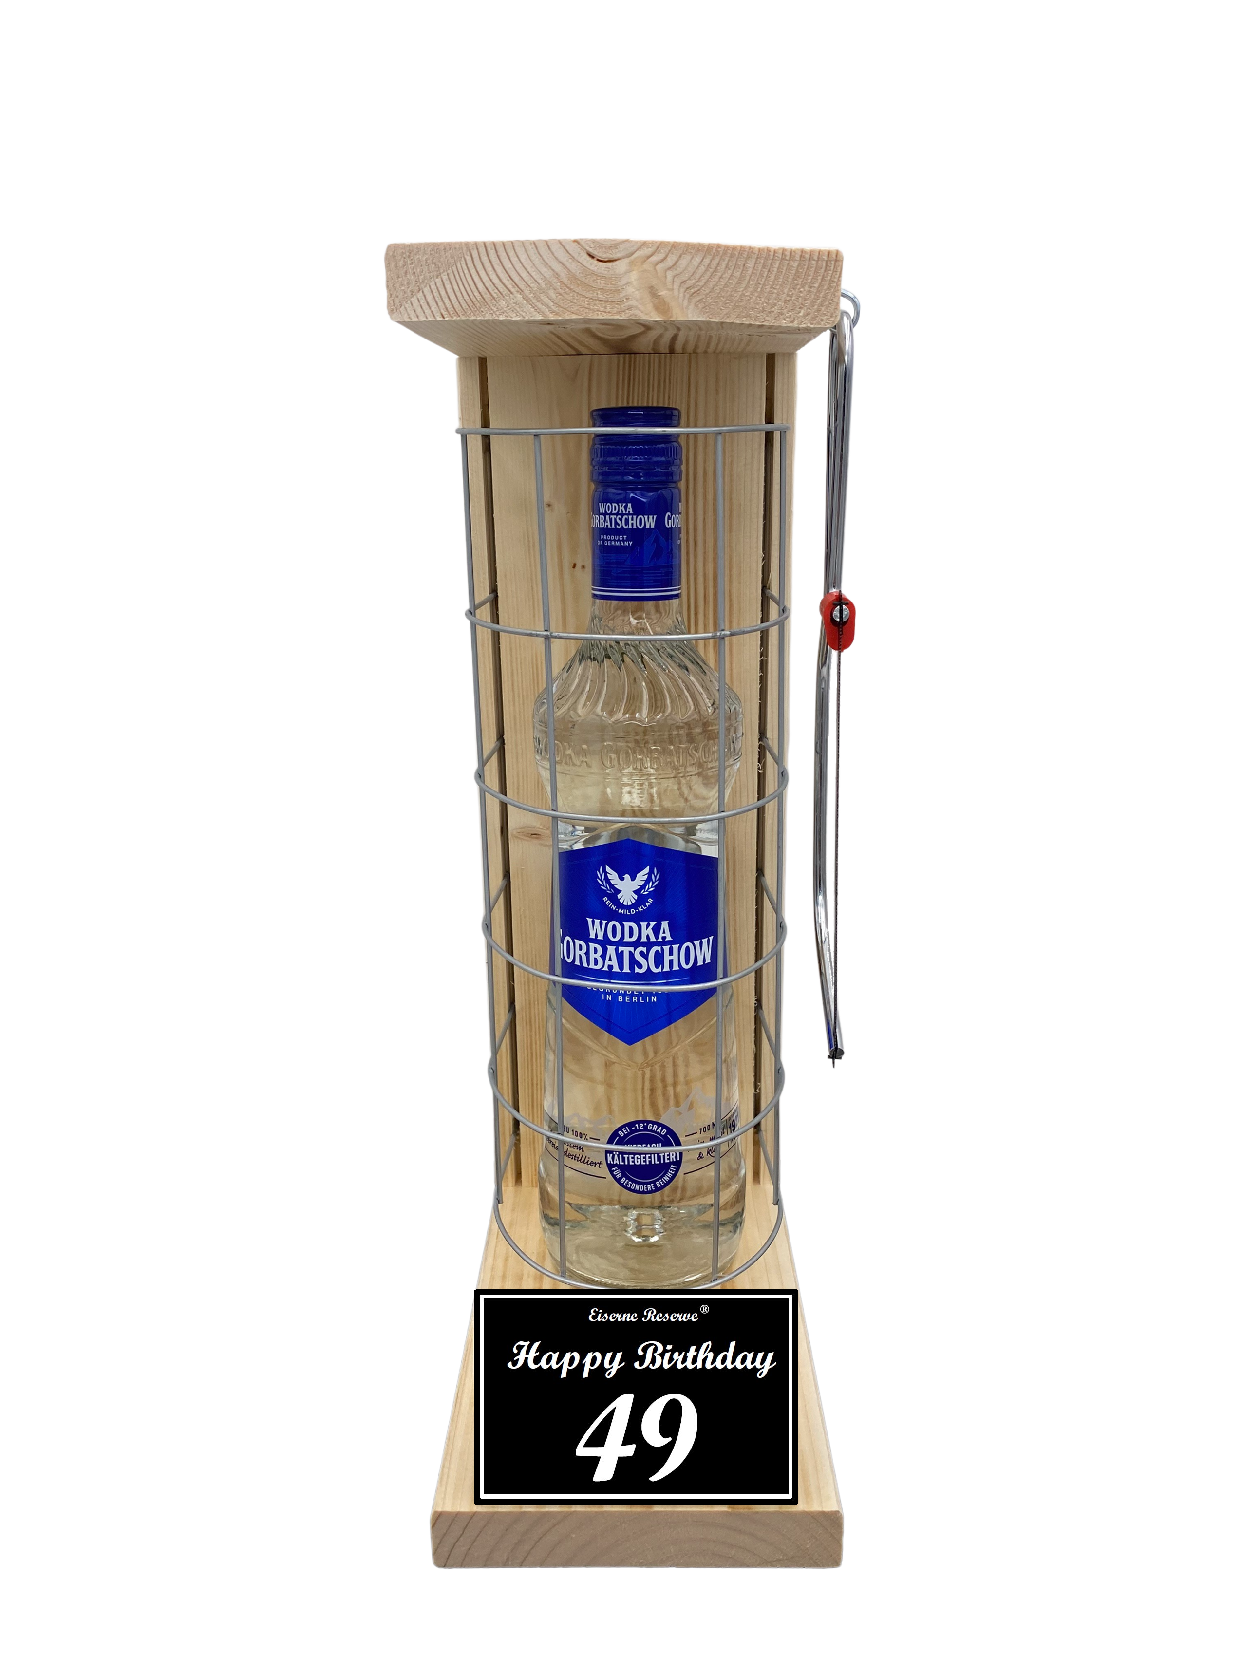 Wodka Geschenk zum 49 Geburtstag - Eiserne Reserve Gitterkäfig